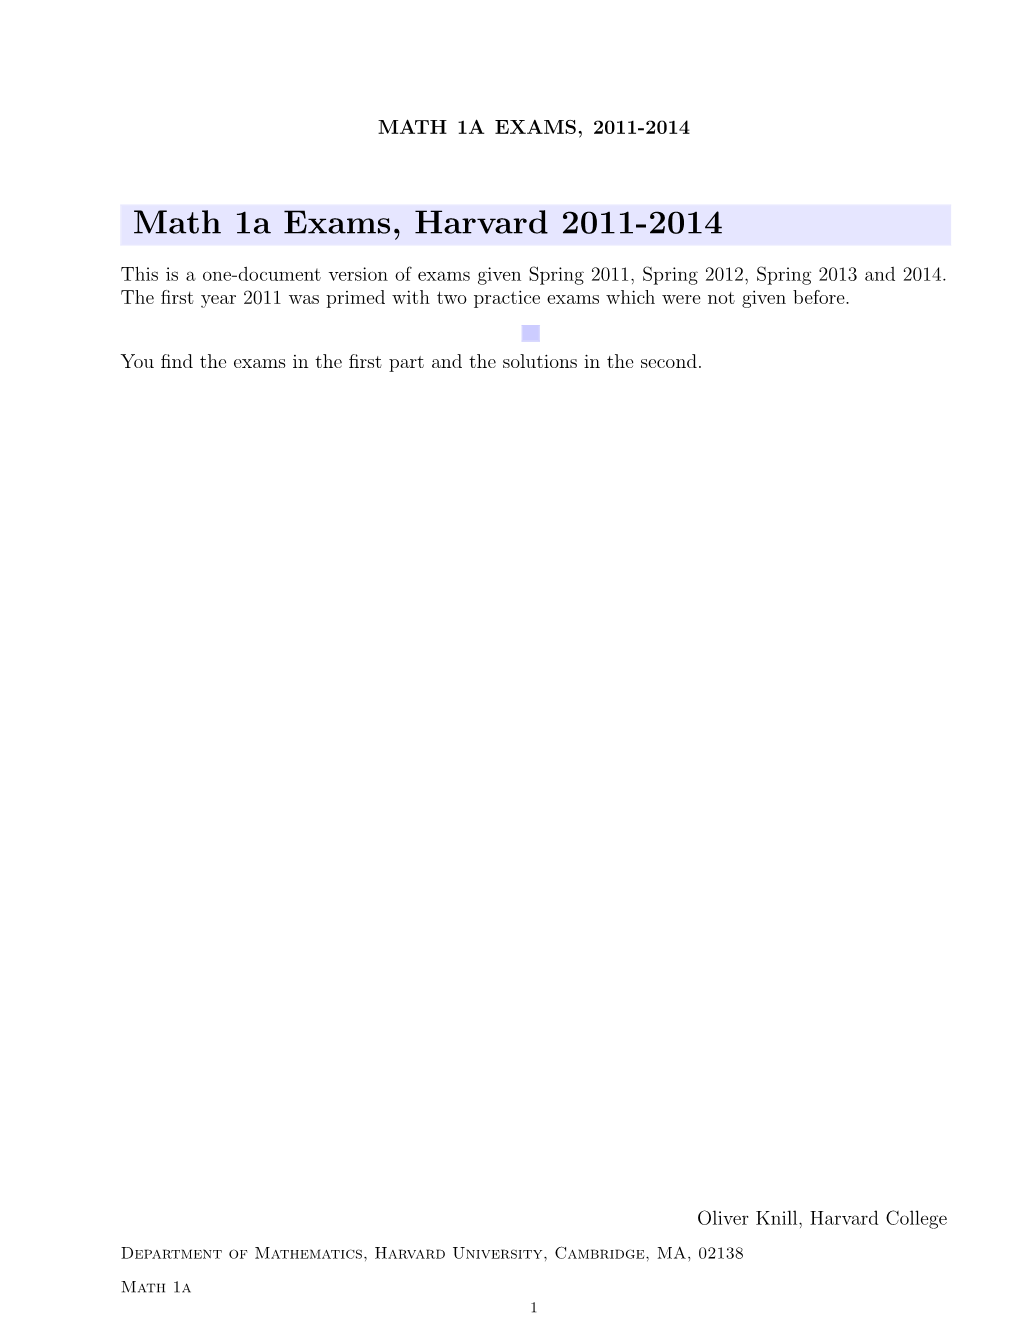 Math 1A Exams, Harvard 2011-2014